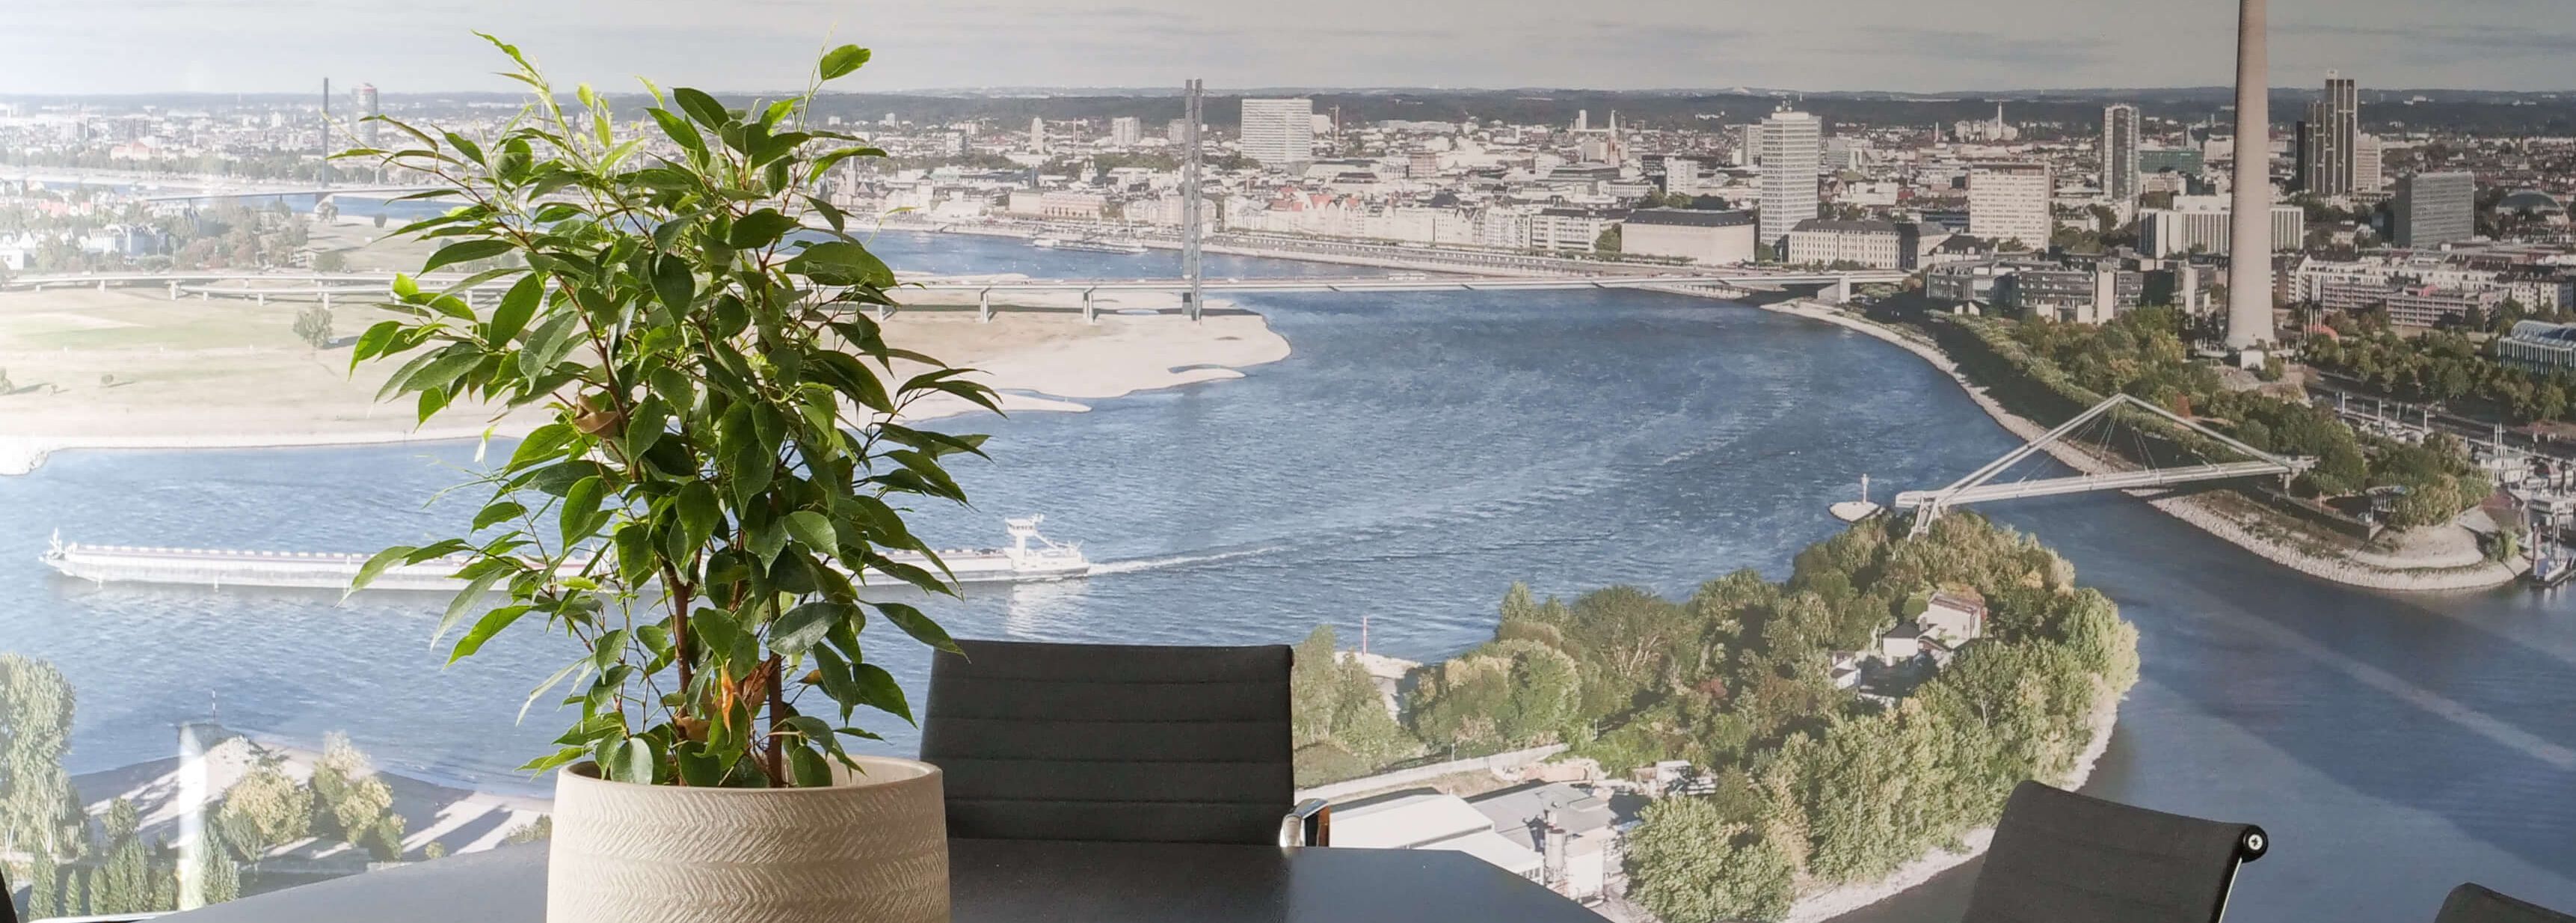 Besprechungstisch mit einer Pflanze darauf, vor einer Fotoleinwand, die den Rhein in Düsseldorf zeigt